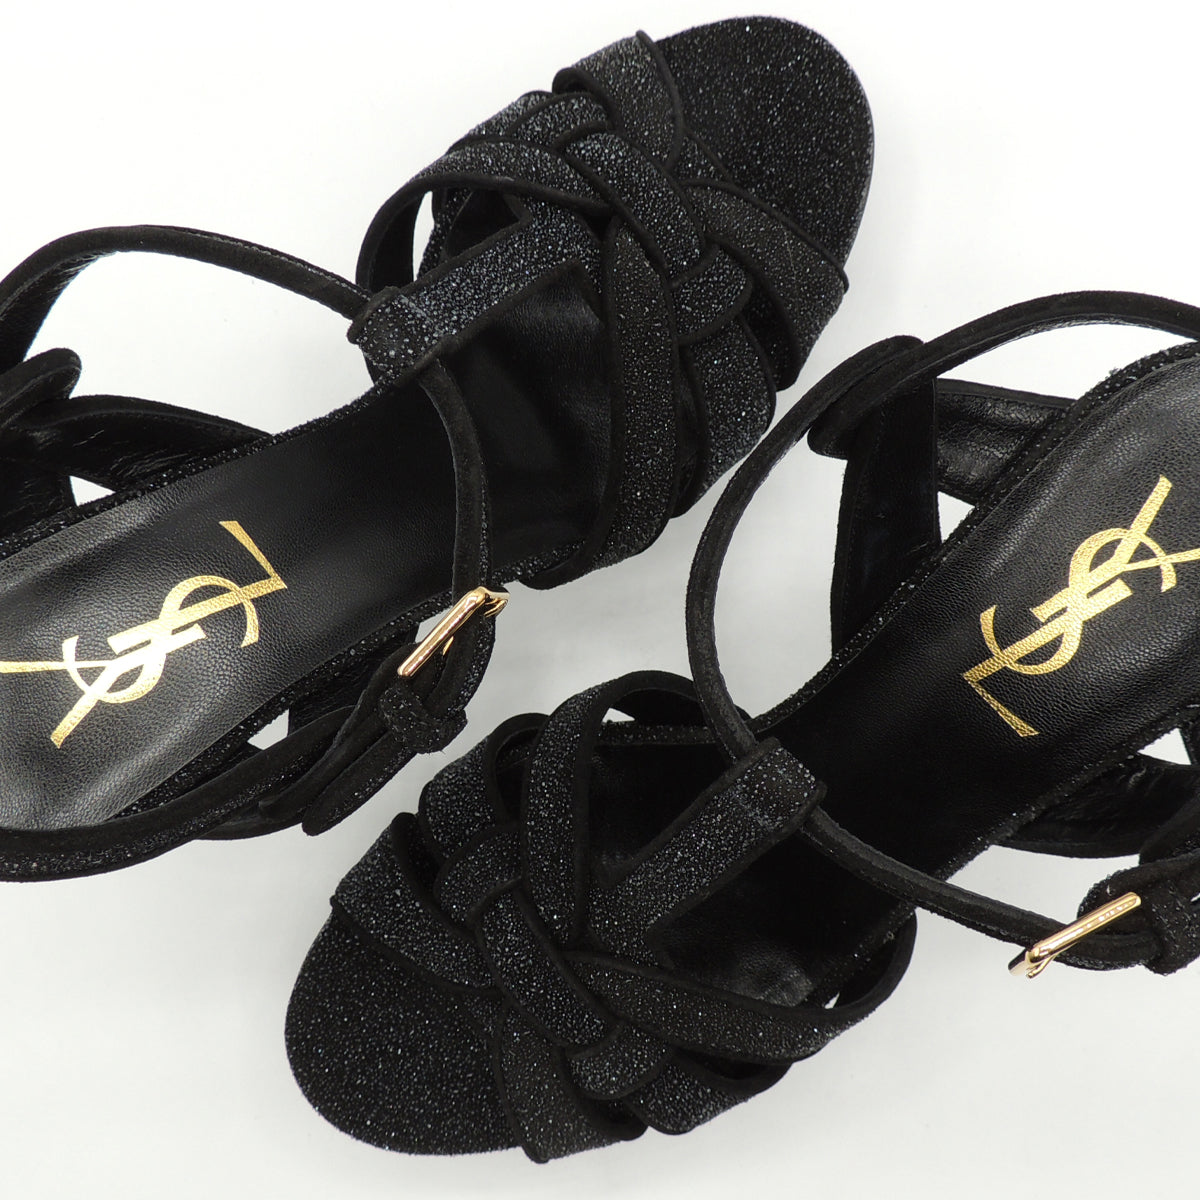 Yves Saint Laurent Black Quartz Leather Tribute 75 Sandals, UK size 5.5